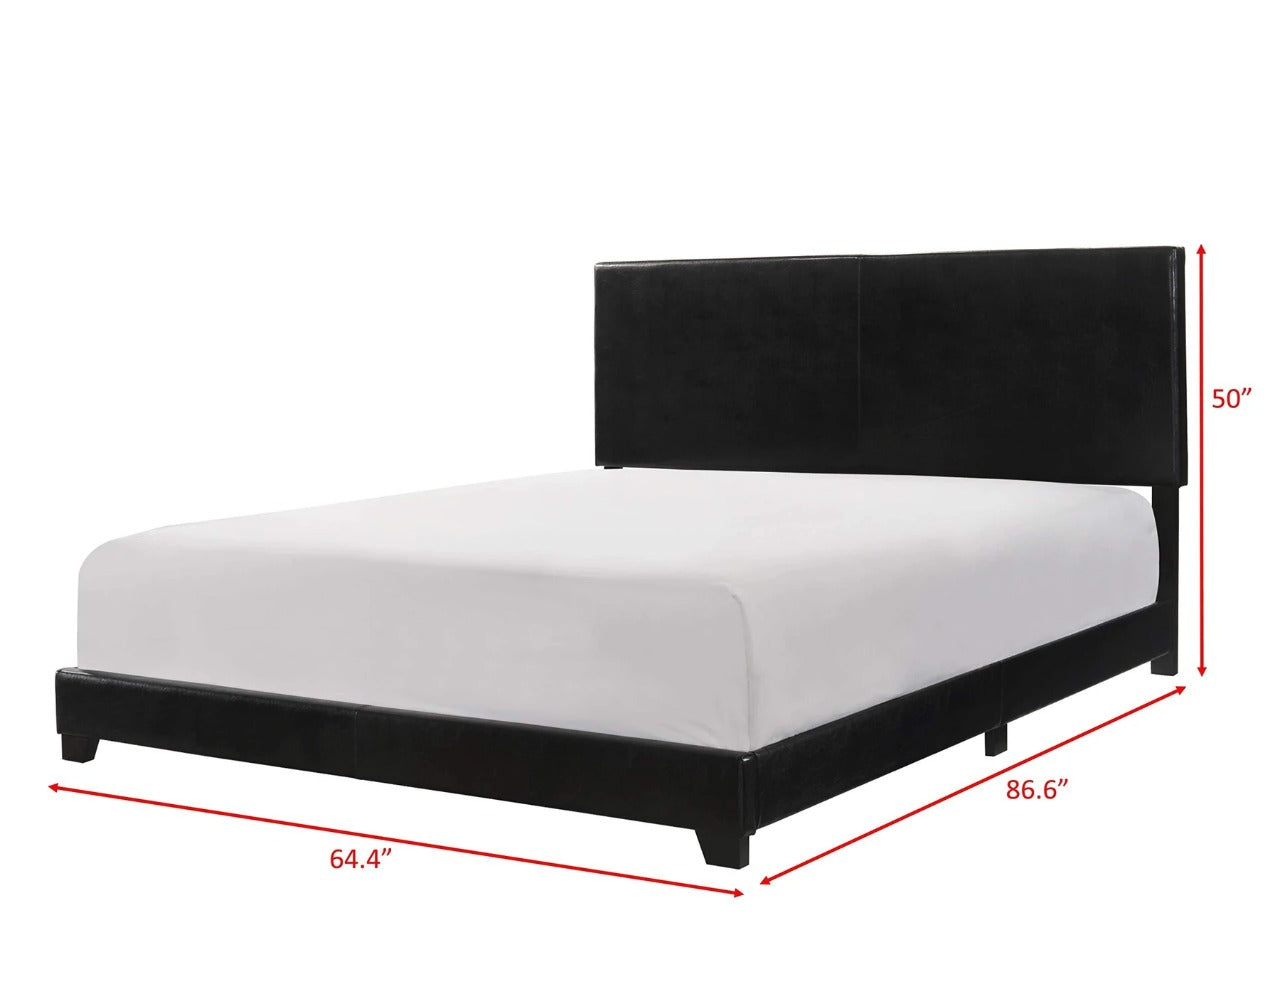 Queen Size Bed : Joe Bed